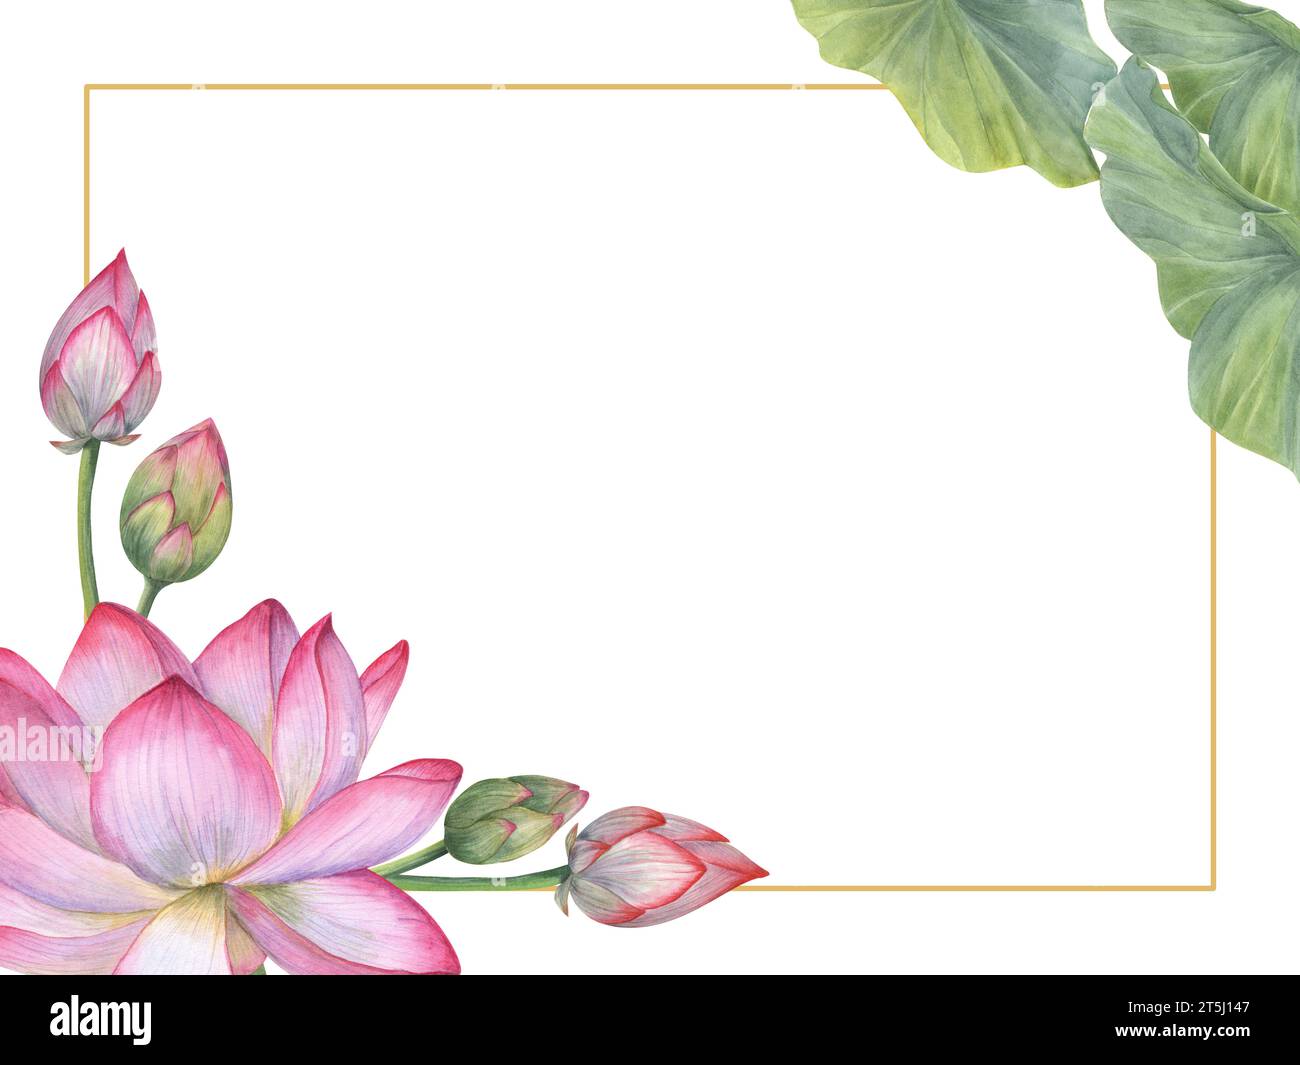 Rahmen aus heiliger indischer Lotusblüte, Knospen, Blättern. Seerose, indischer Lotus, grünes Blatt, Knospen. Horizontaler Rahmen. Leerzeichen für Text. Stockfoto